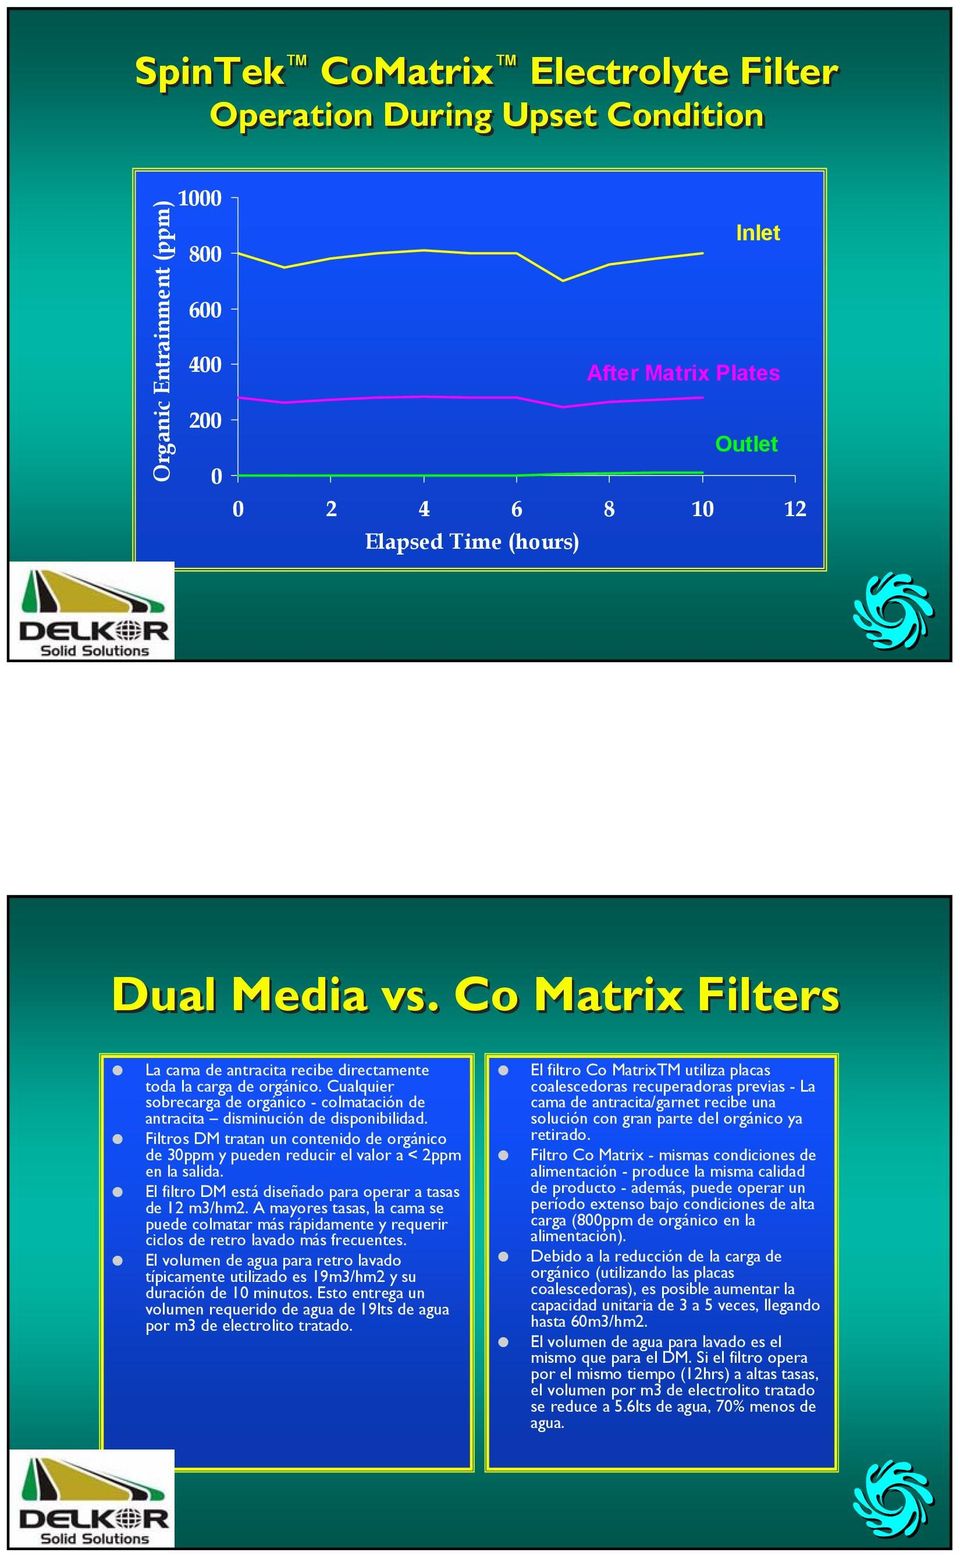 Filtros DM tratan un contenido de orgánico de 30ppm y pueden reducir el valor a < 2ppm en la salida. El filtro DM está diseñado para operar a tasas de 12 m3/hm2.